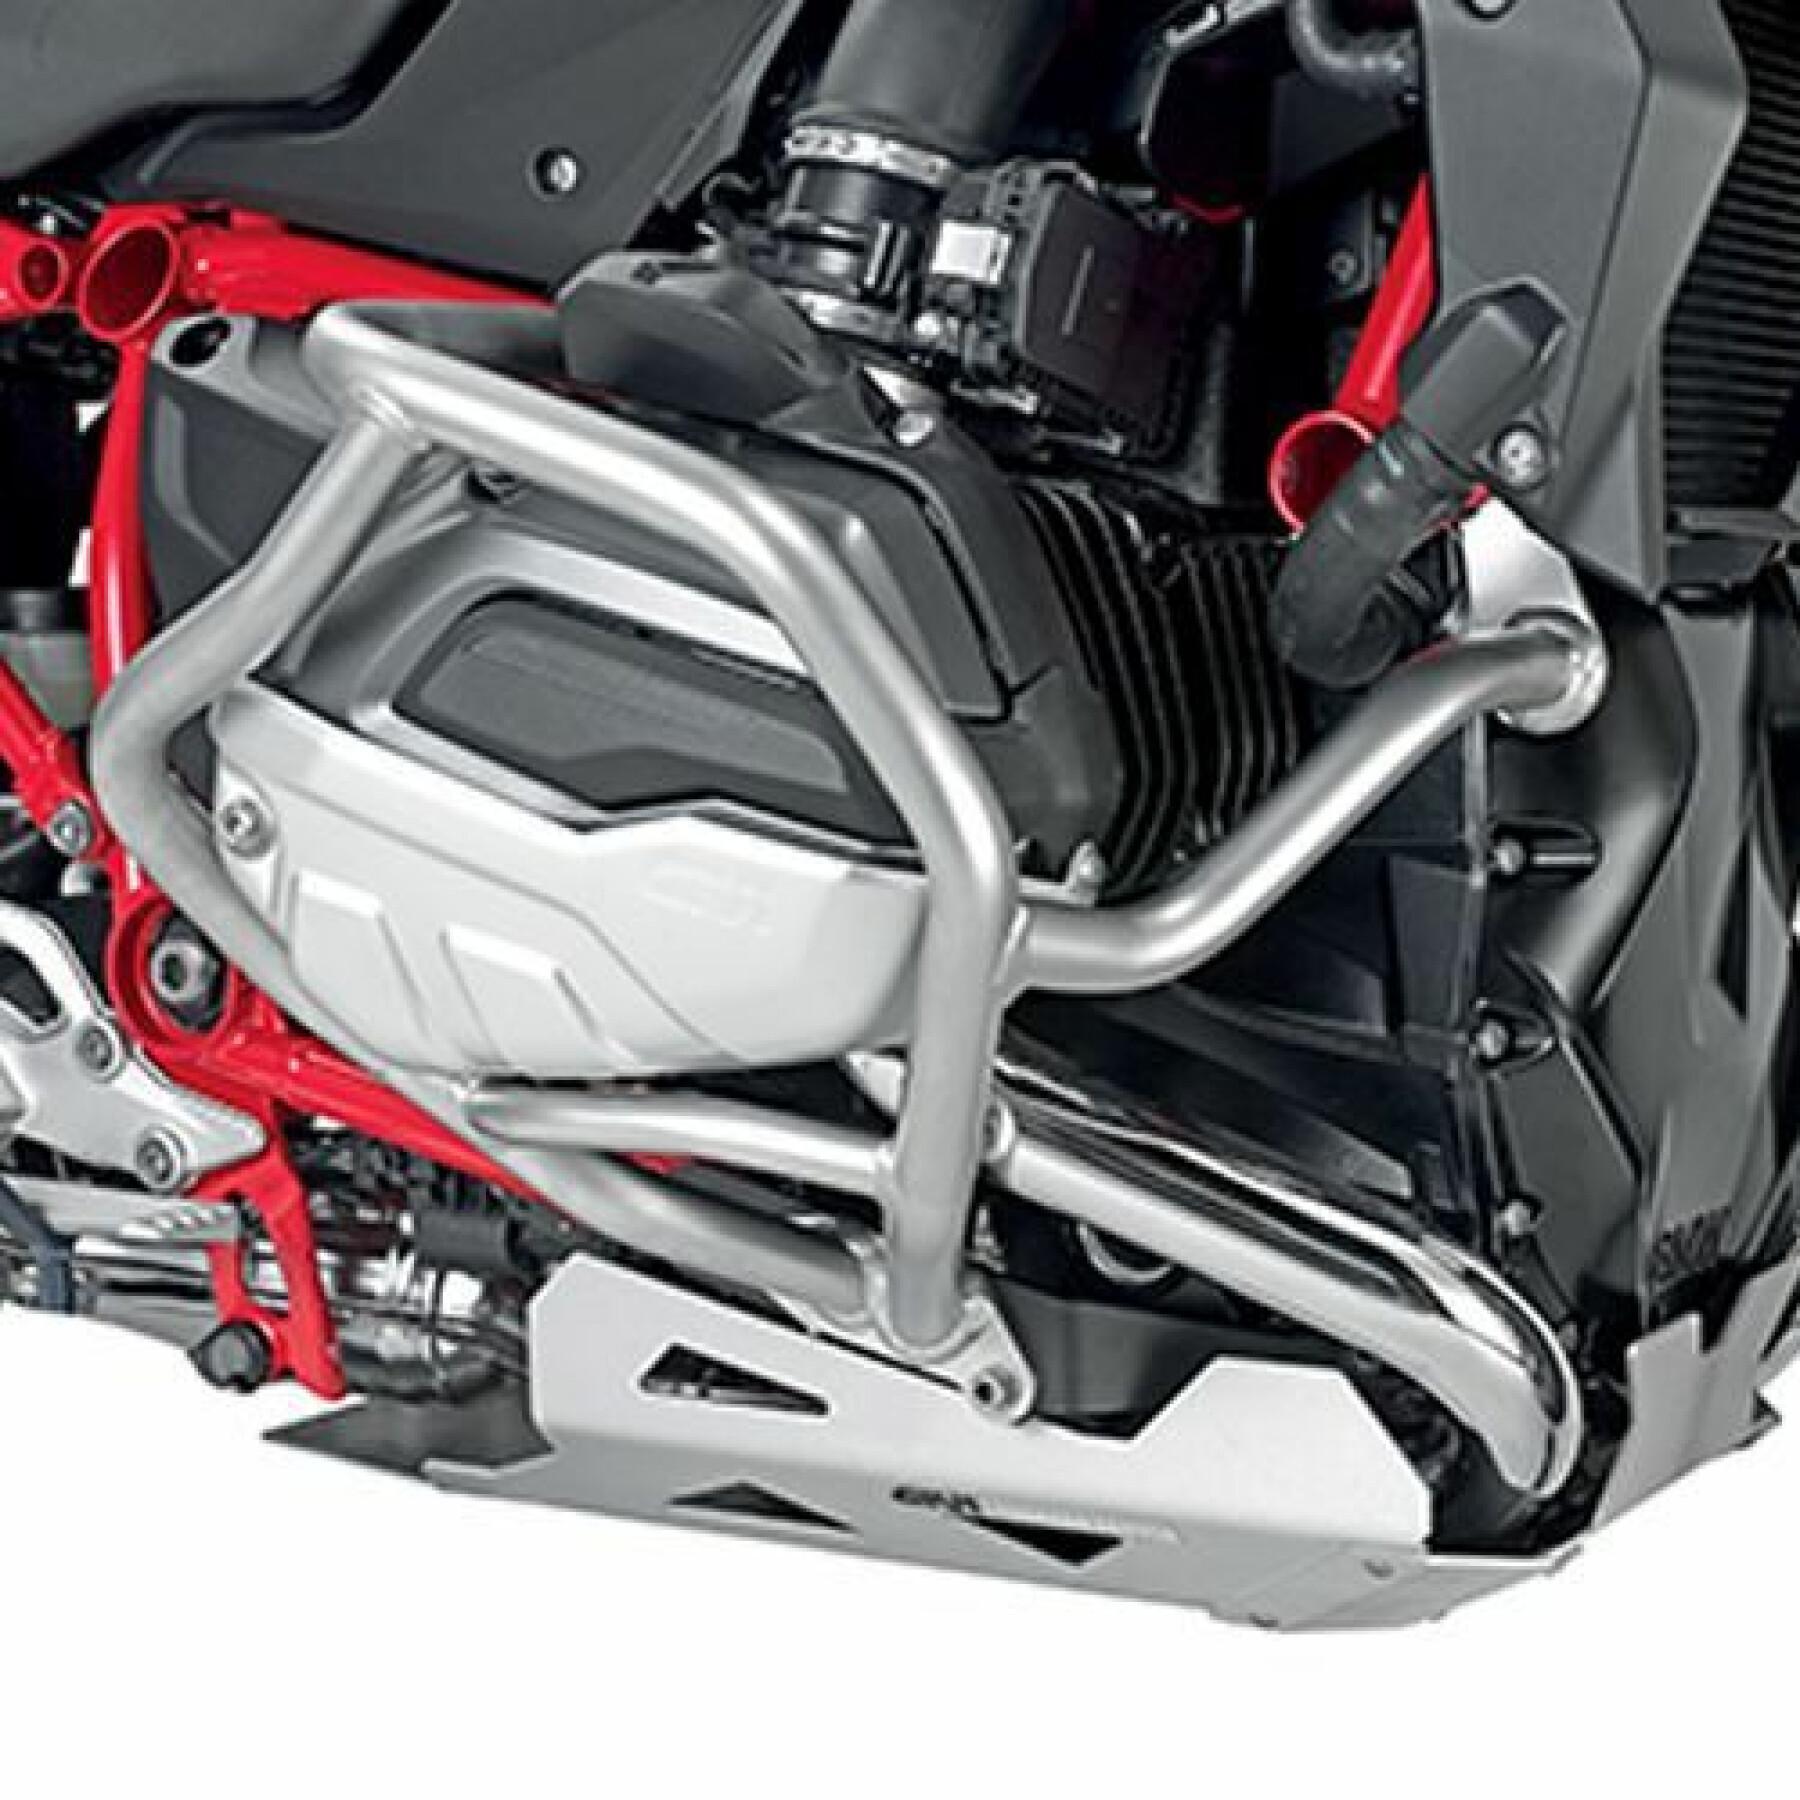 Kit de fixação Givi Yamaha tracer 900/GT 18 RM02